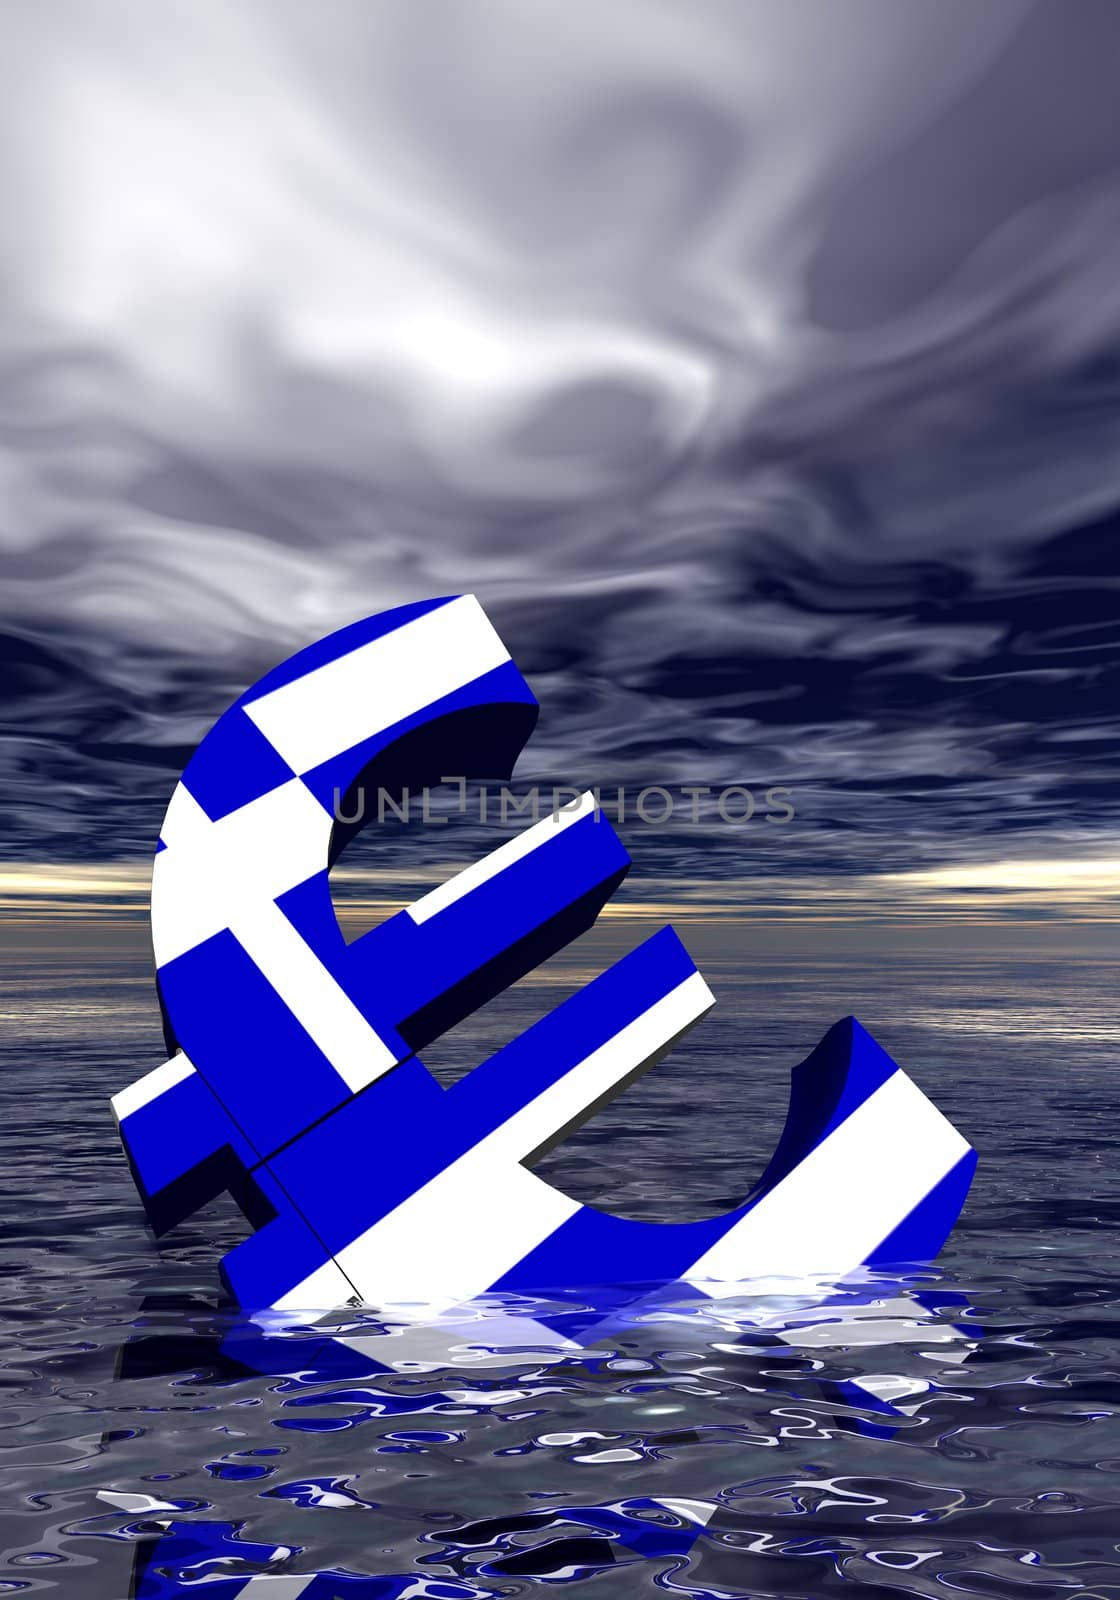 Euro crisis by Elenaphotos21